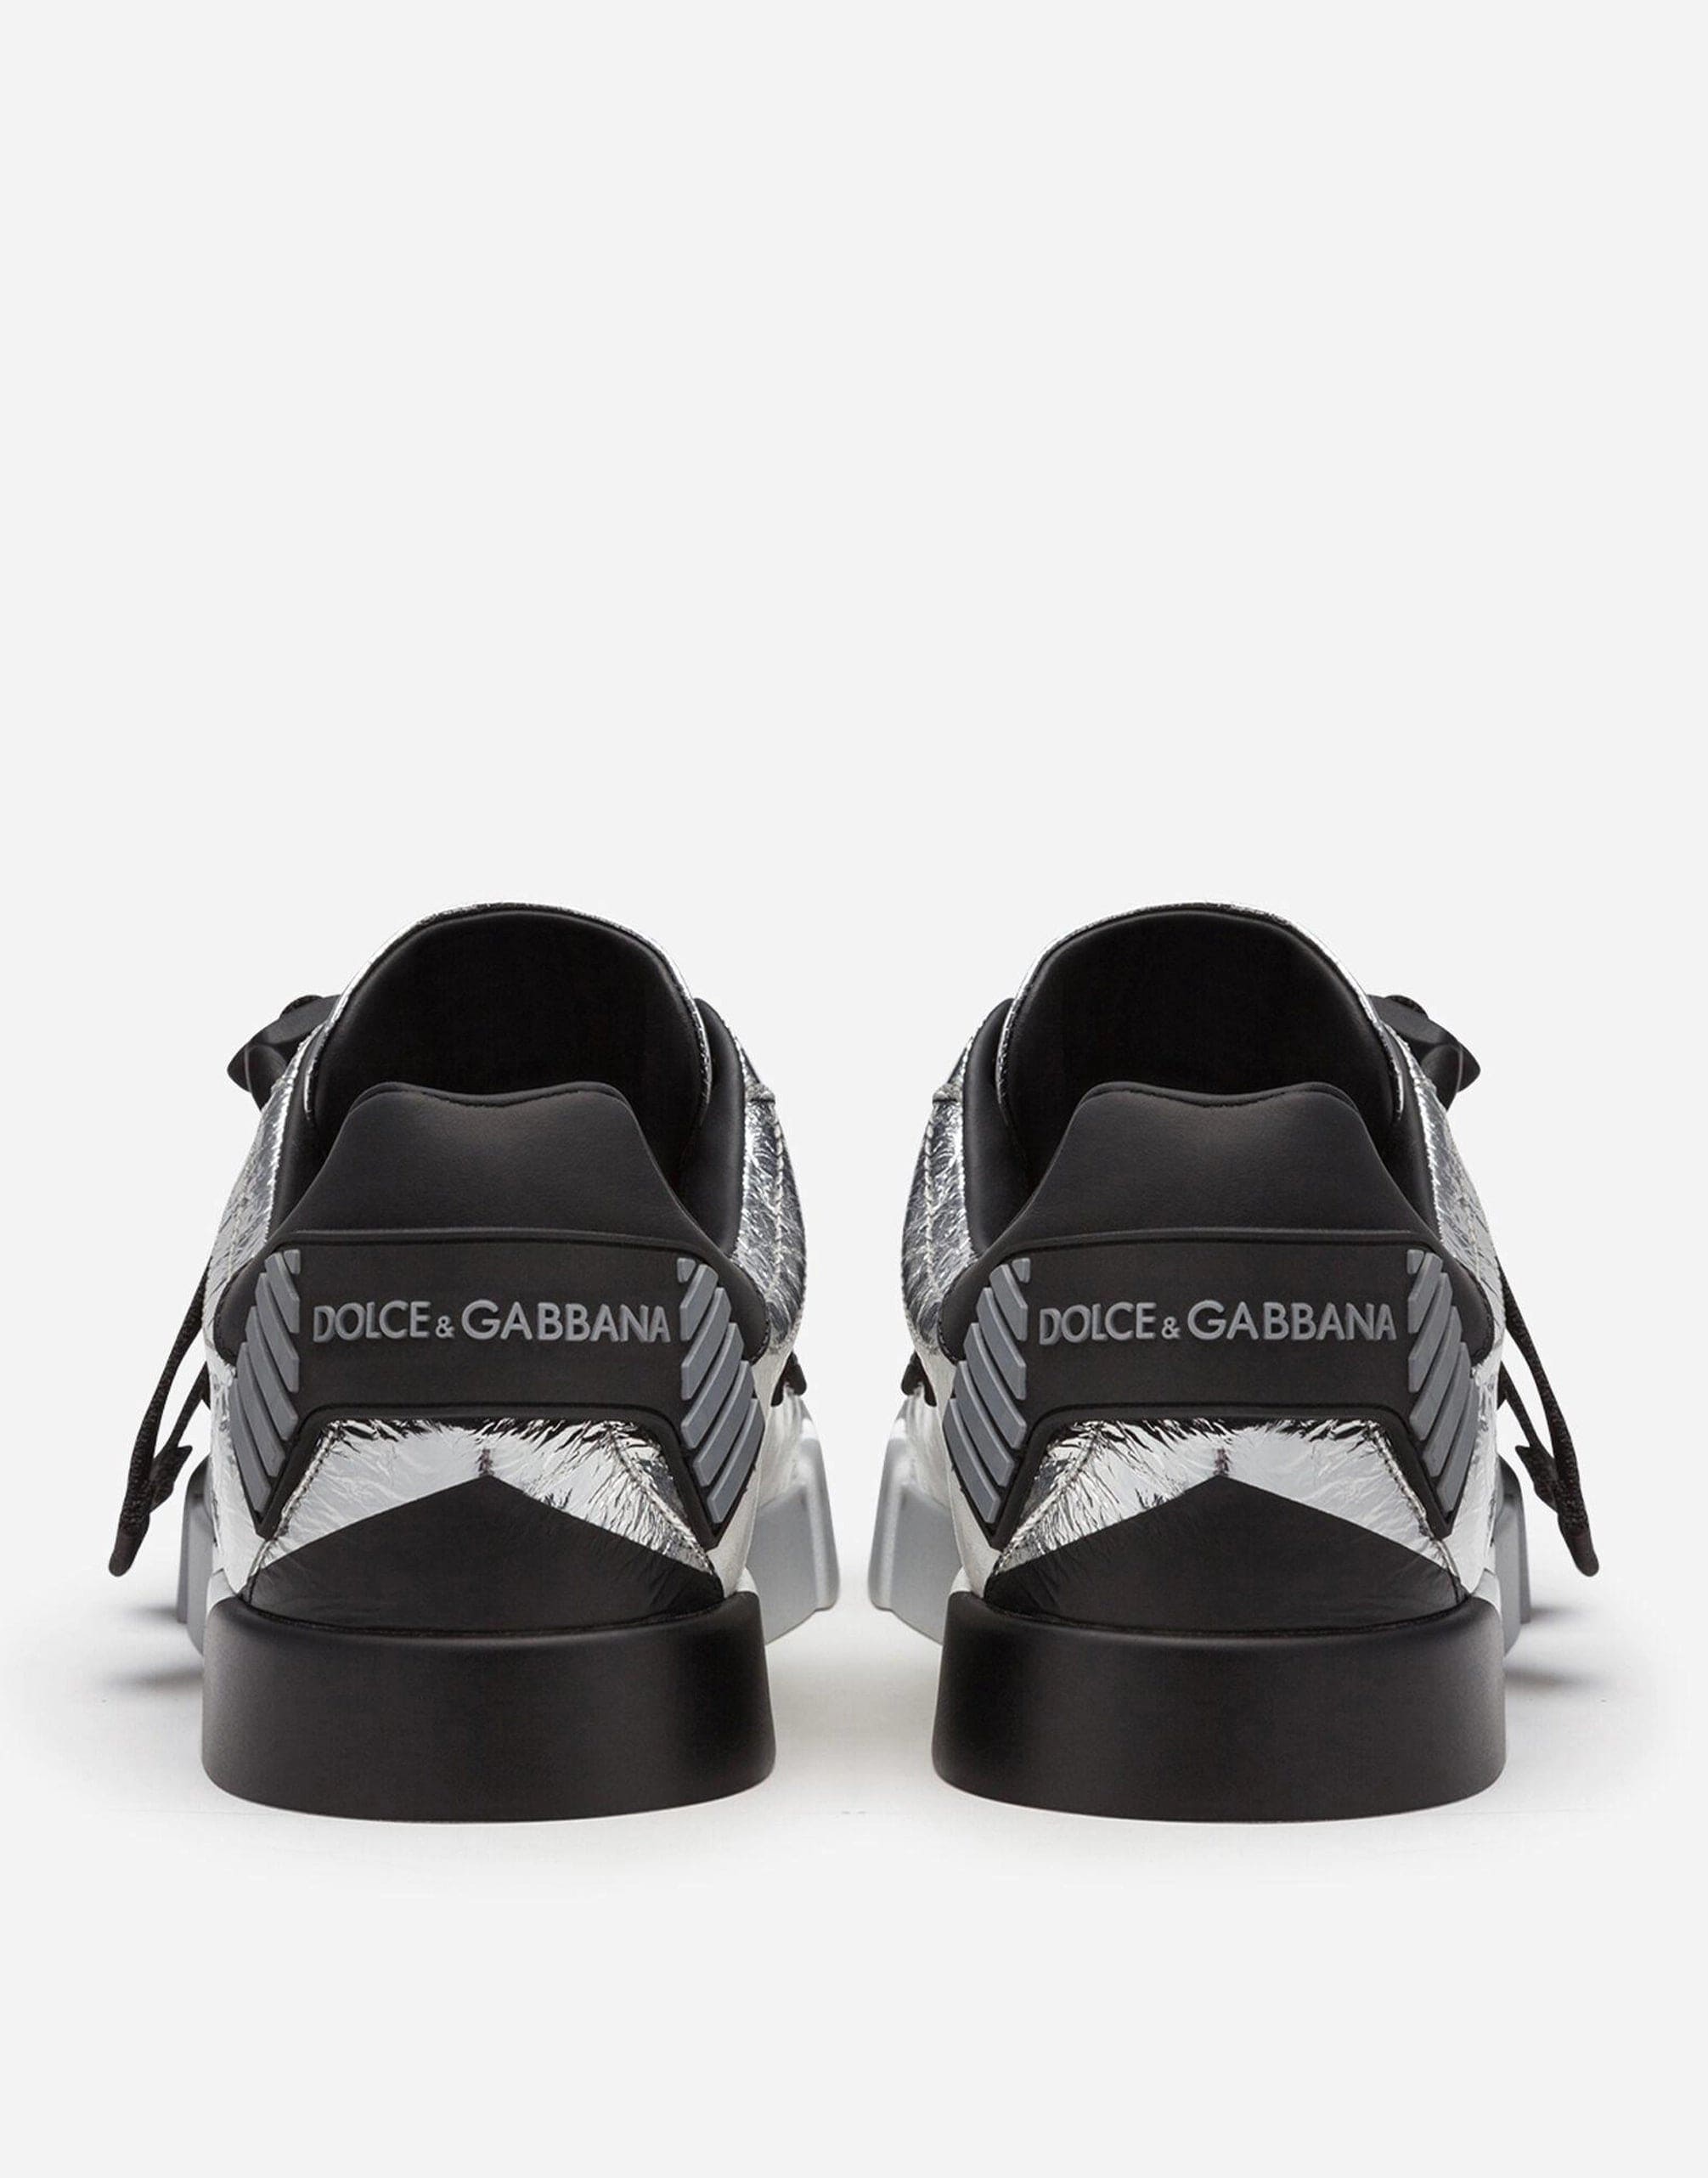 Dolce & Gabbana Laminated Portofino Sneakers